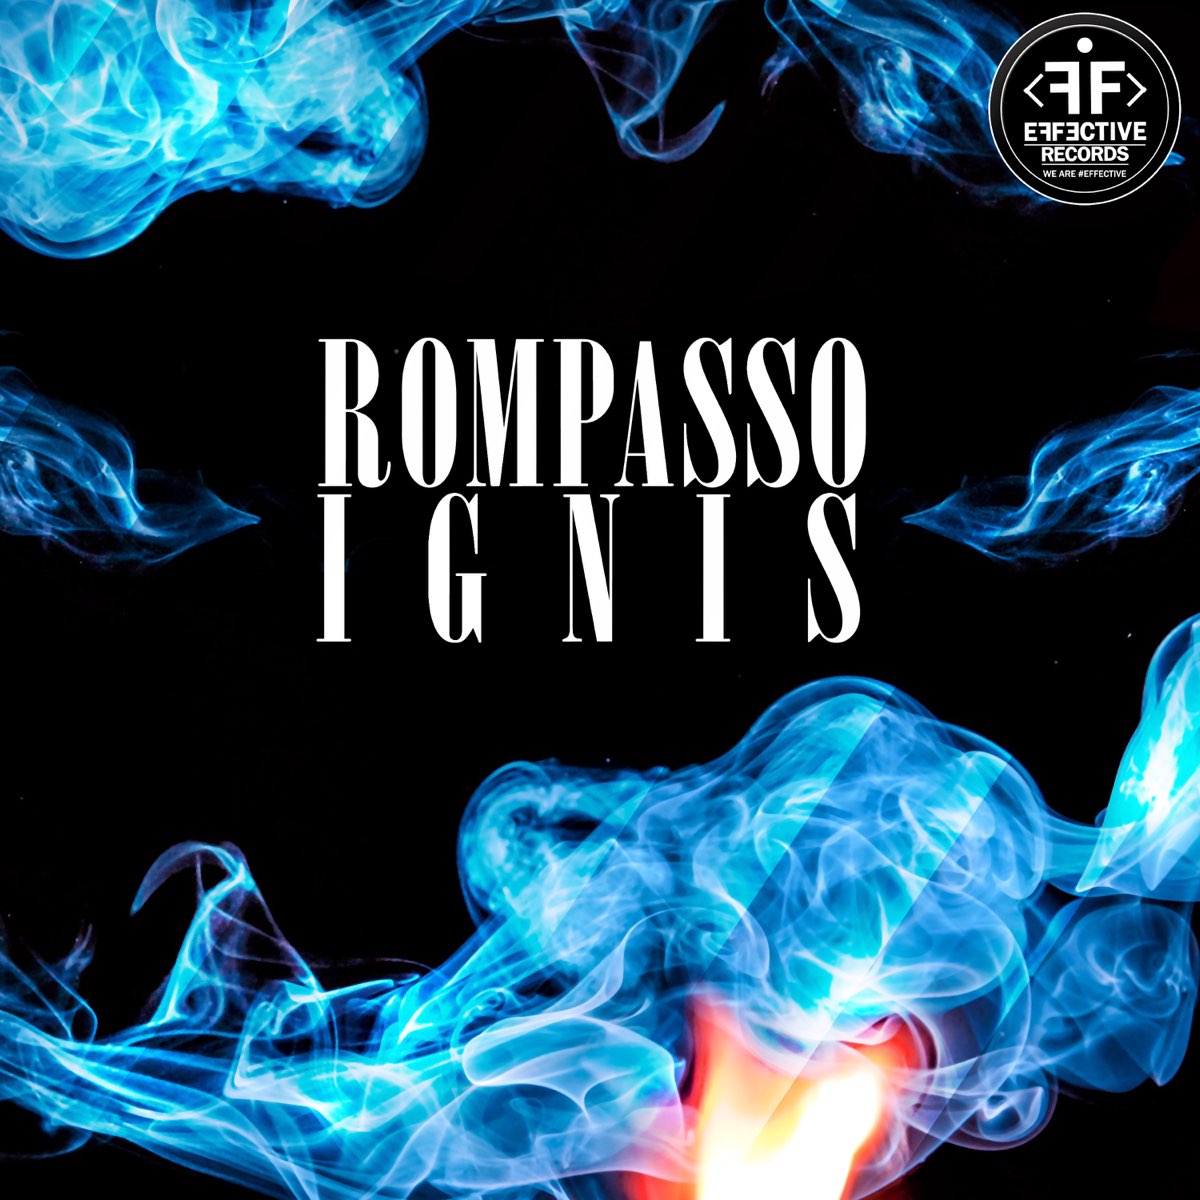 Rompasso Ignis cover artwork